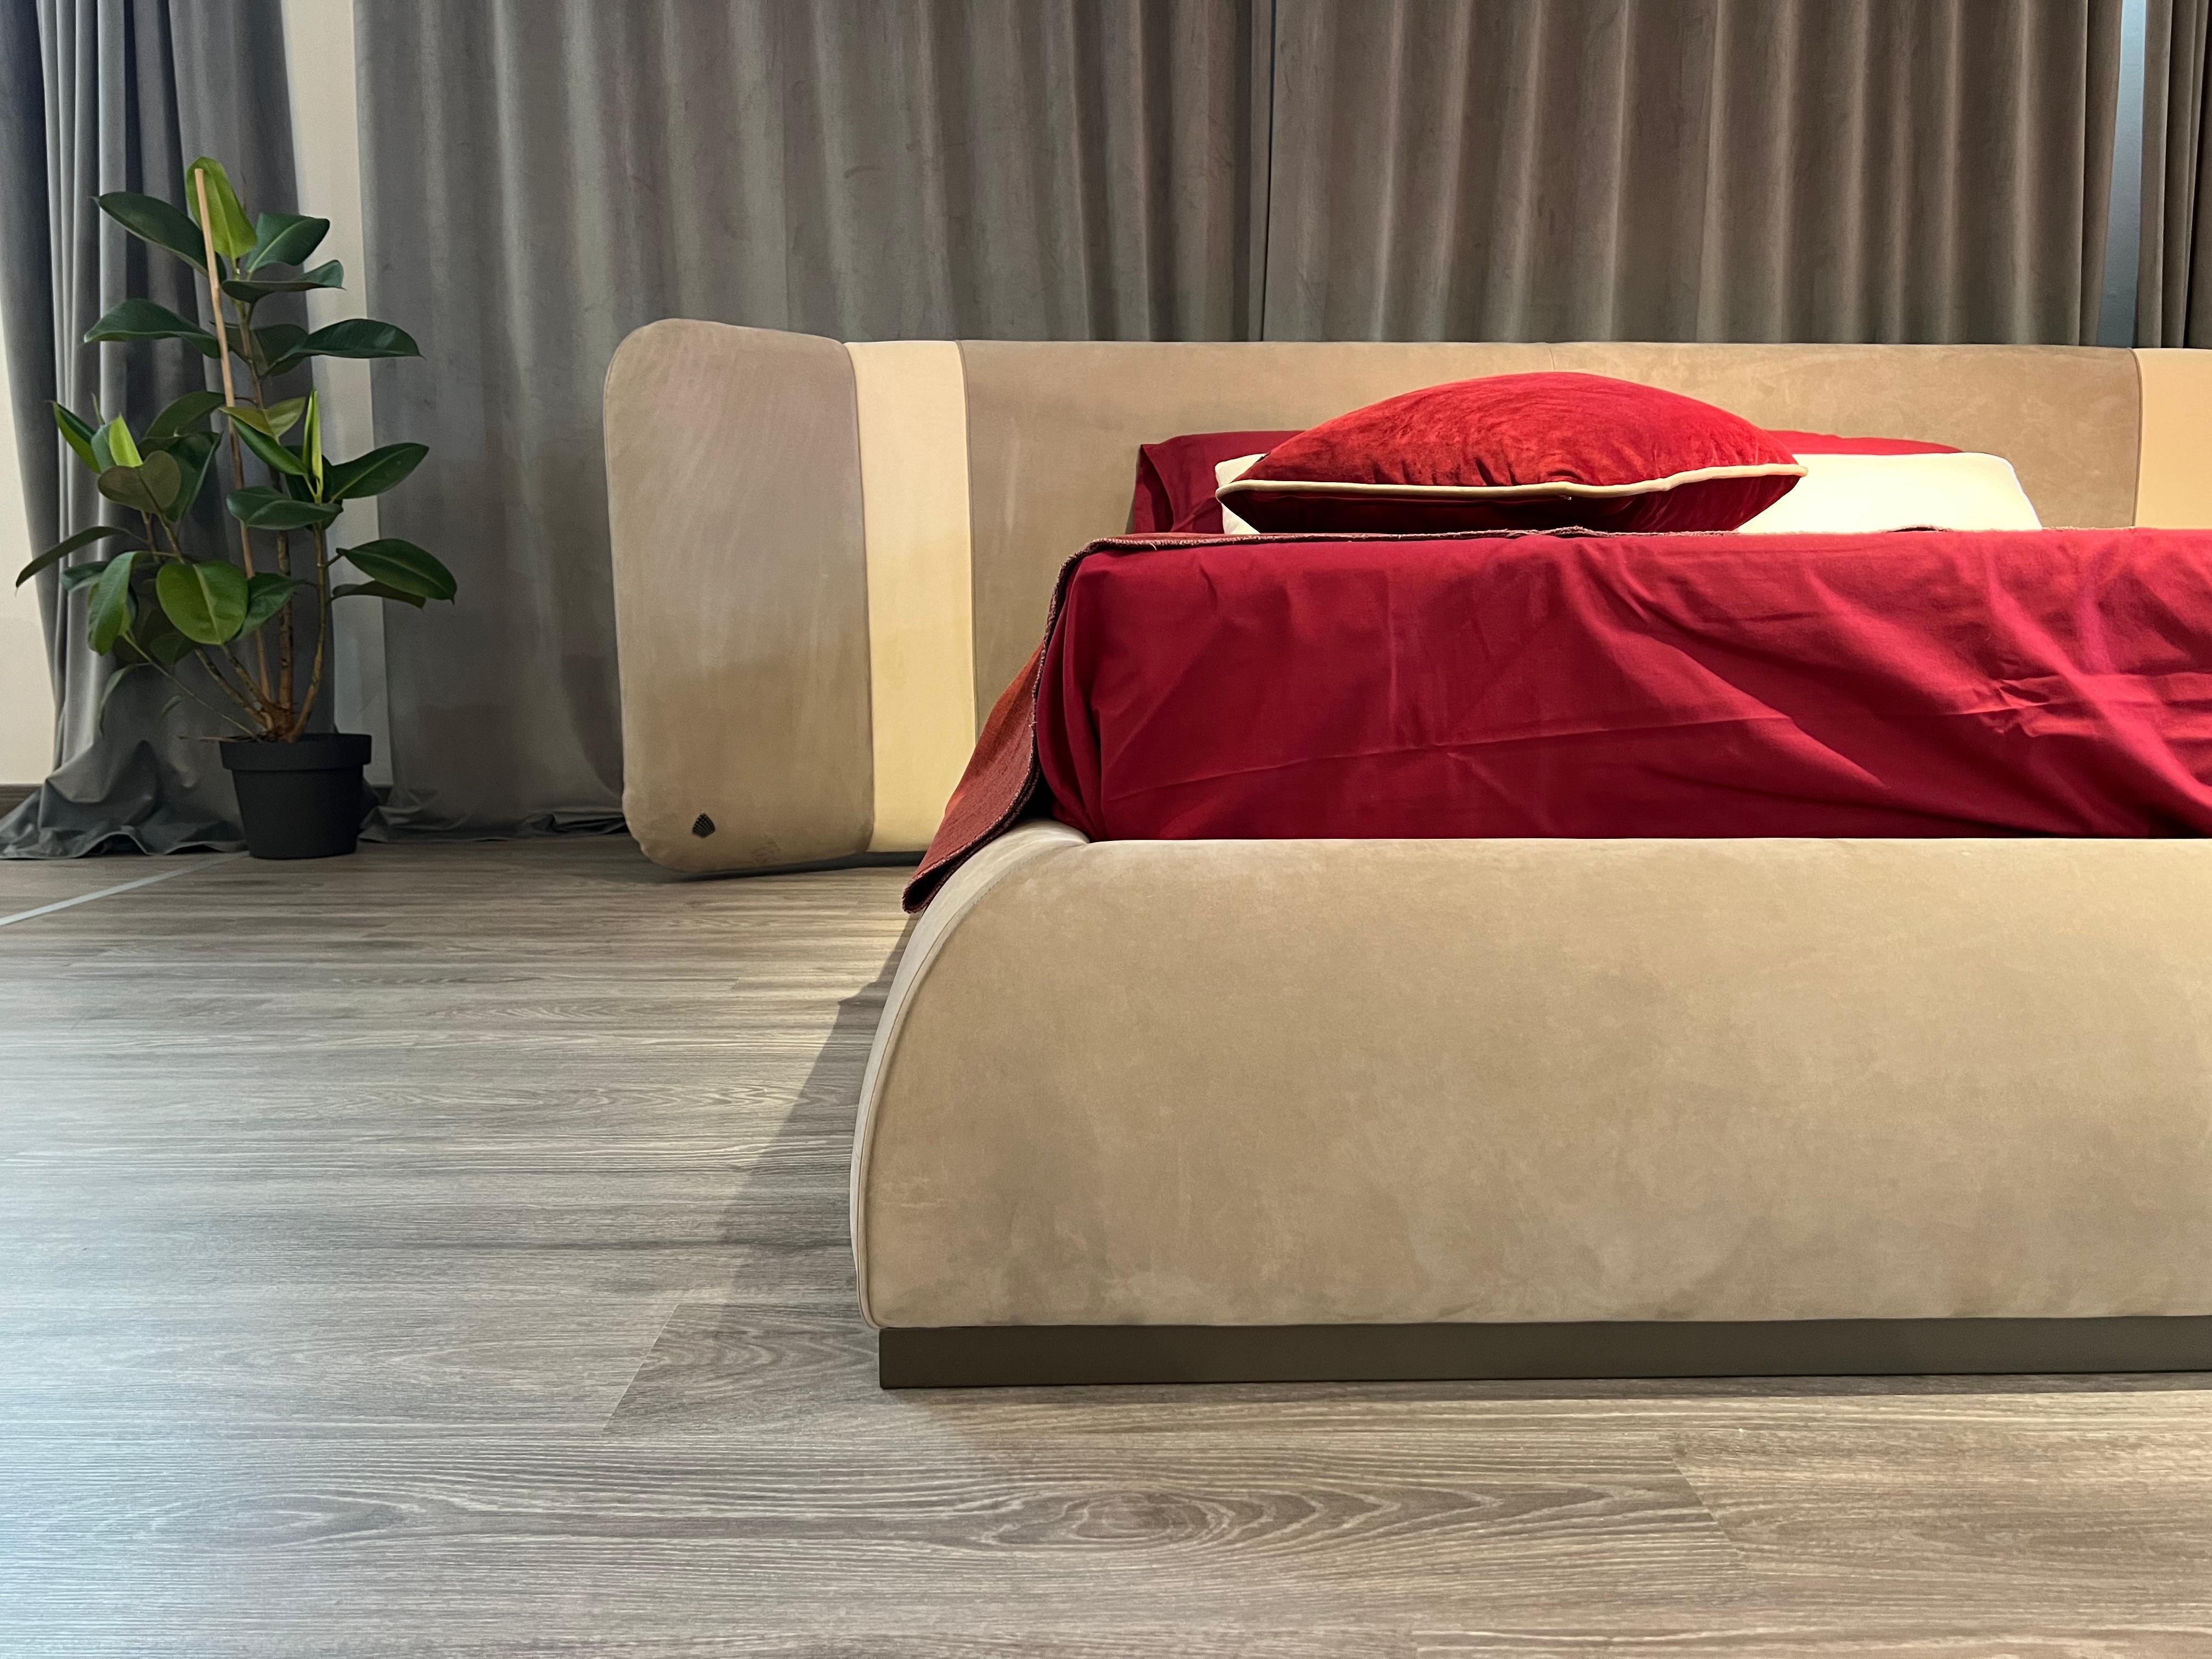 La particularité du lit Madison réside dans sa base en porte-à-faux unique. Cette tête de lit rembourrée aux formes imposantes offre le plus haut niveau de confort.